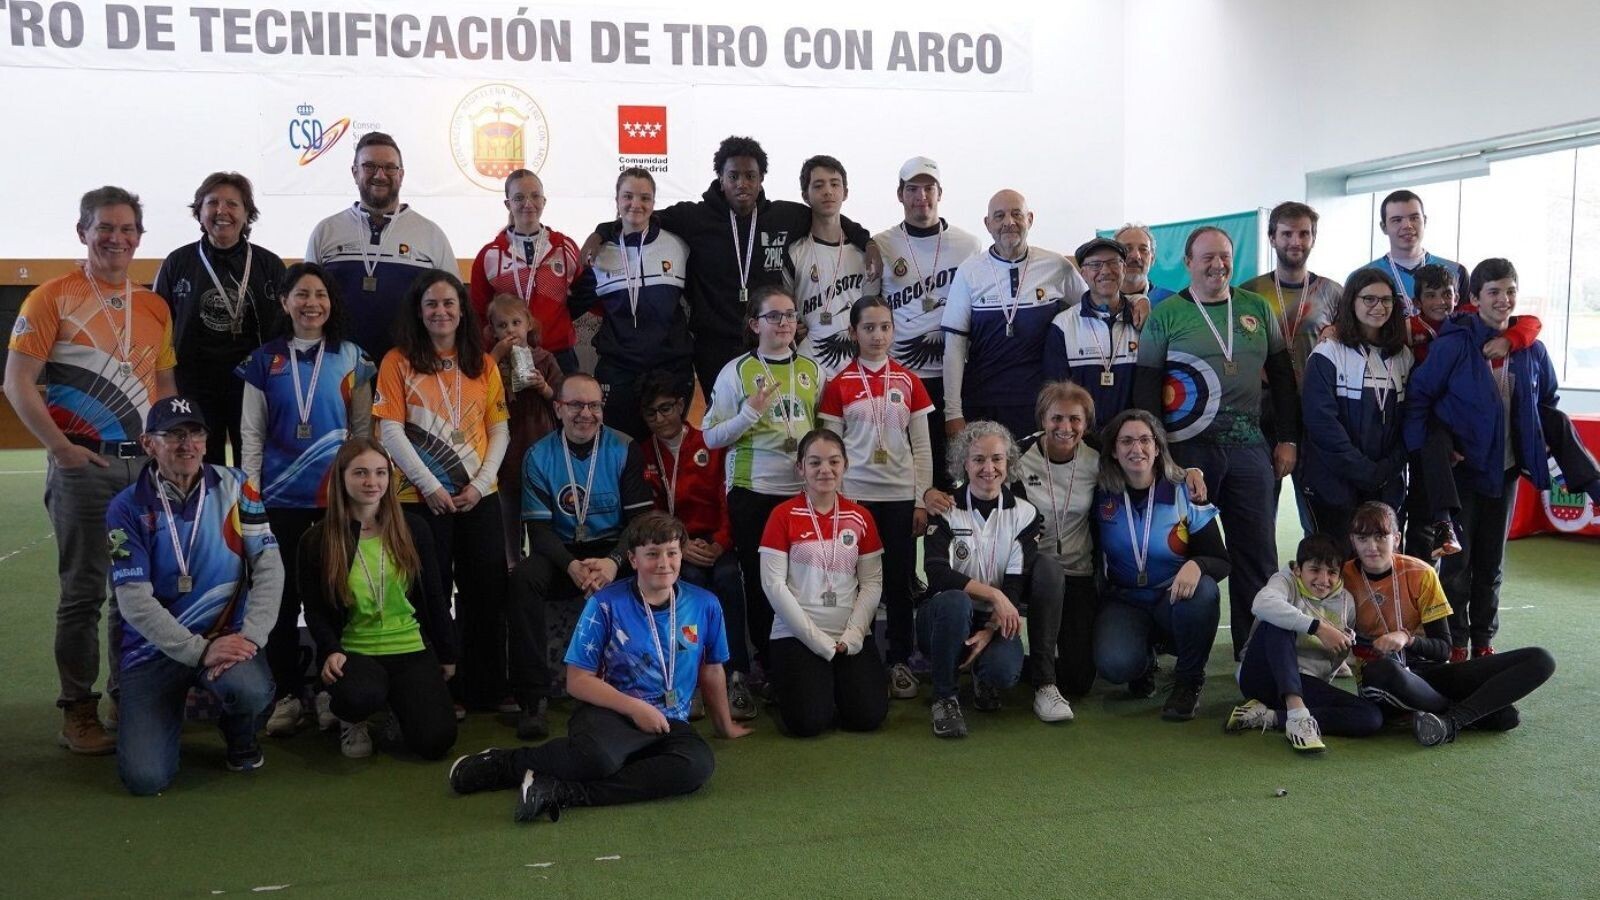 Los arqueros de Pozuelo destacan en la Comunidad de Madrid